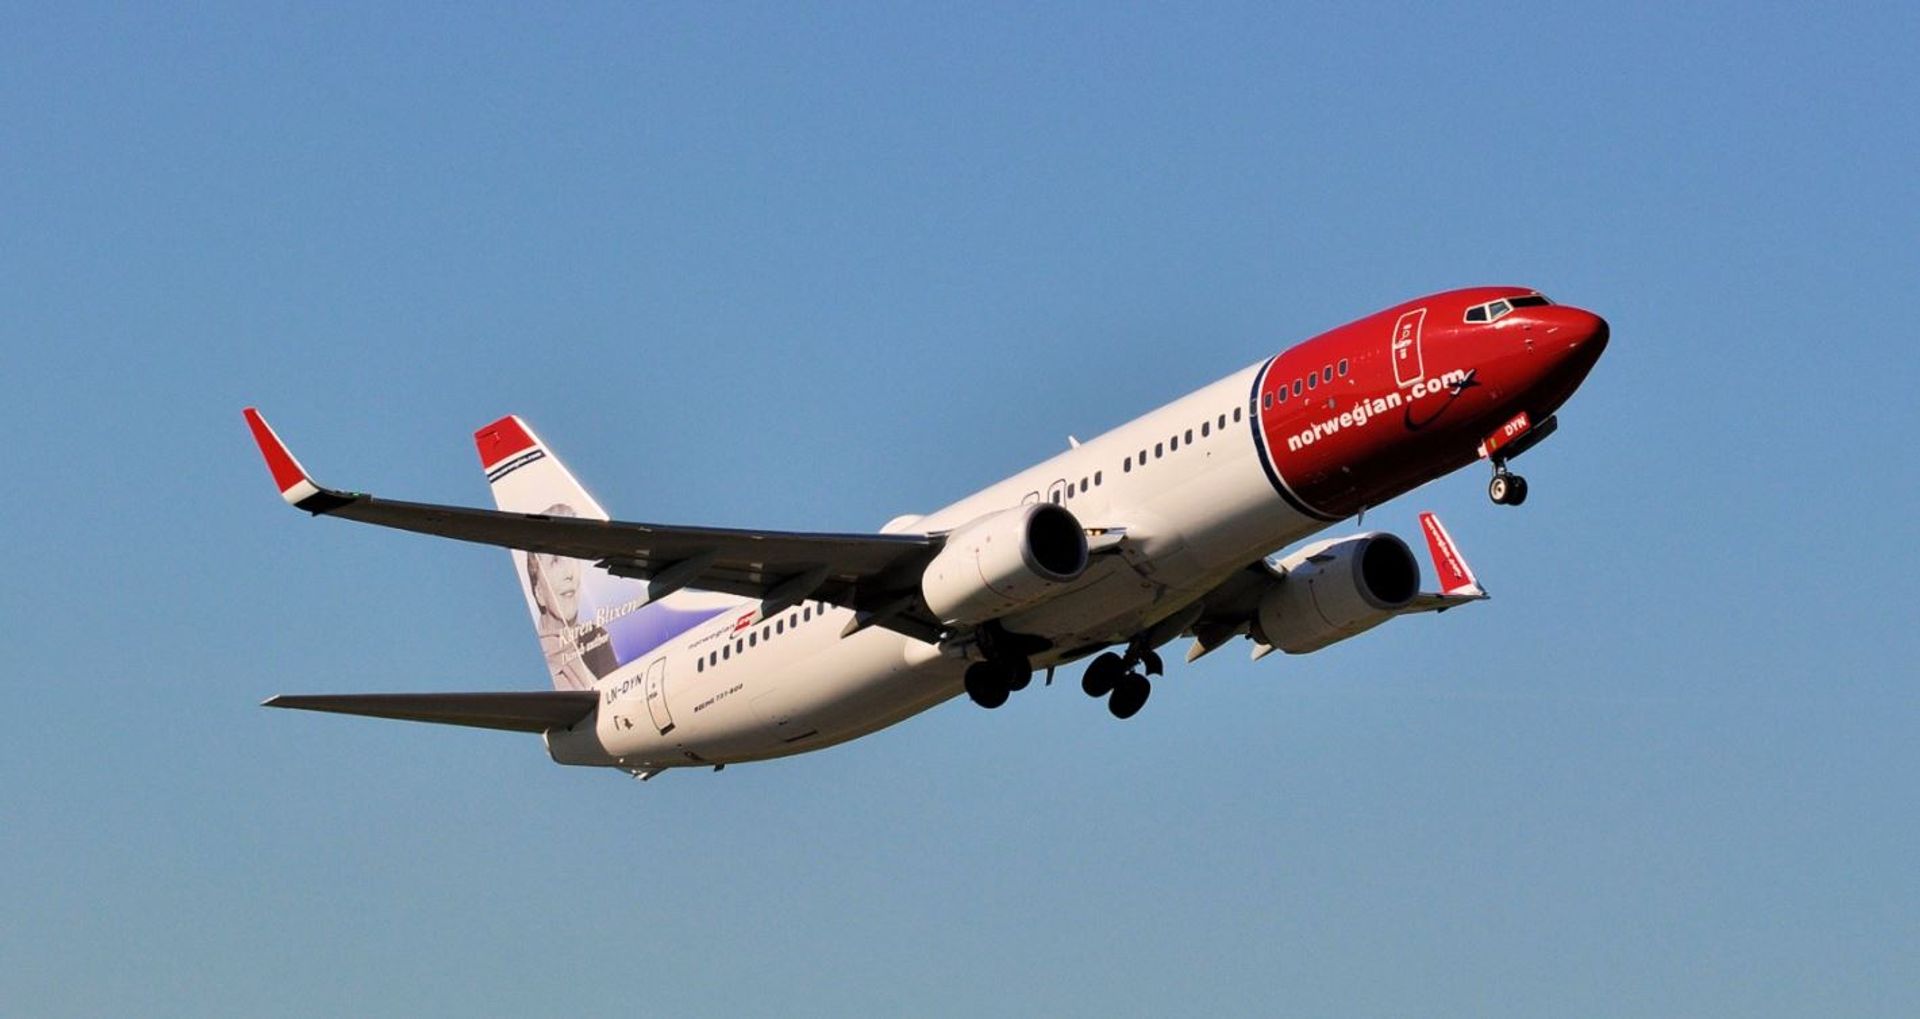 Norwegian ruszył z nowym połączeniem lotniczym na trasie Wrocław – Oslo-Gardermoen